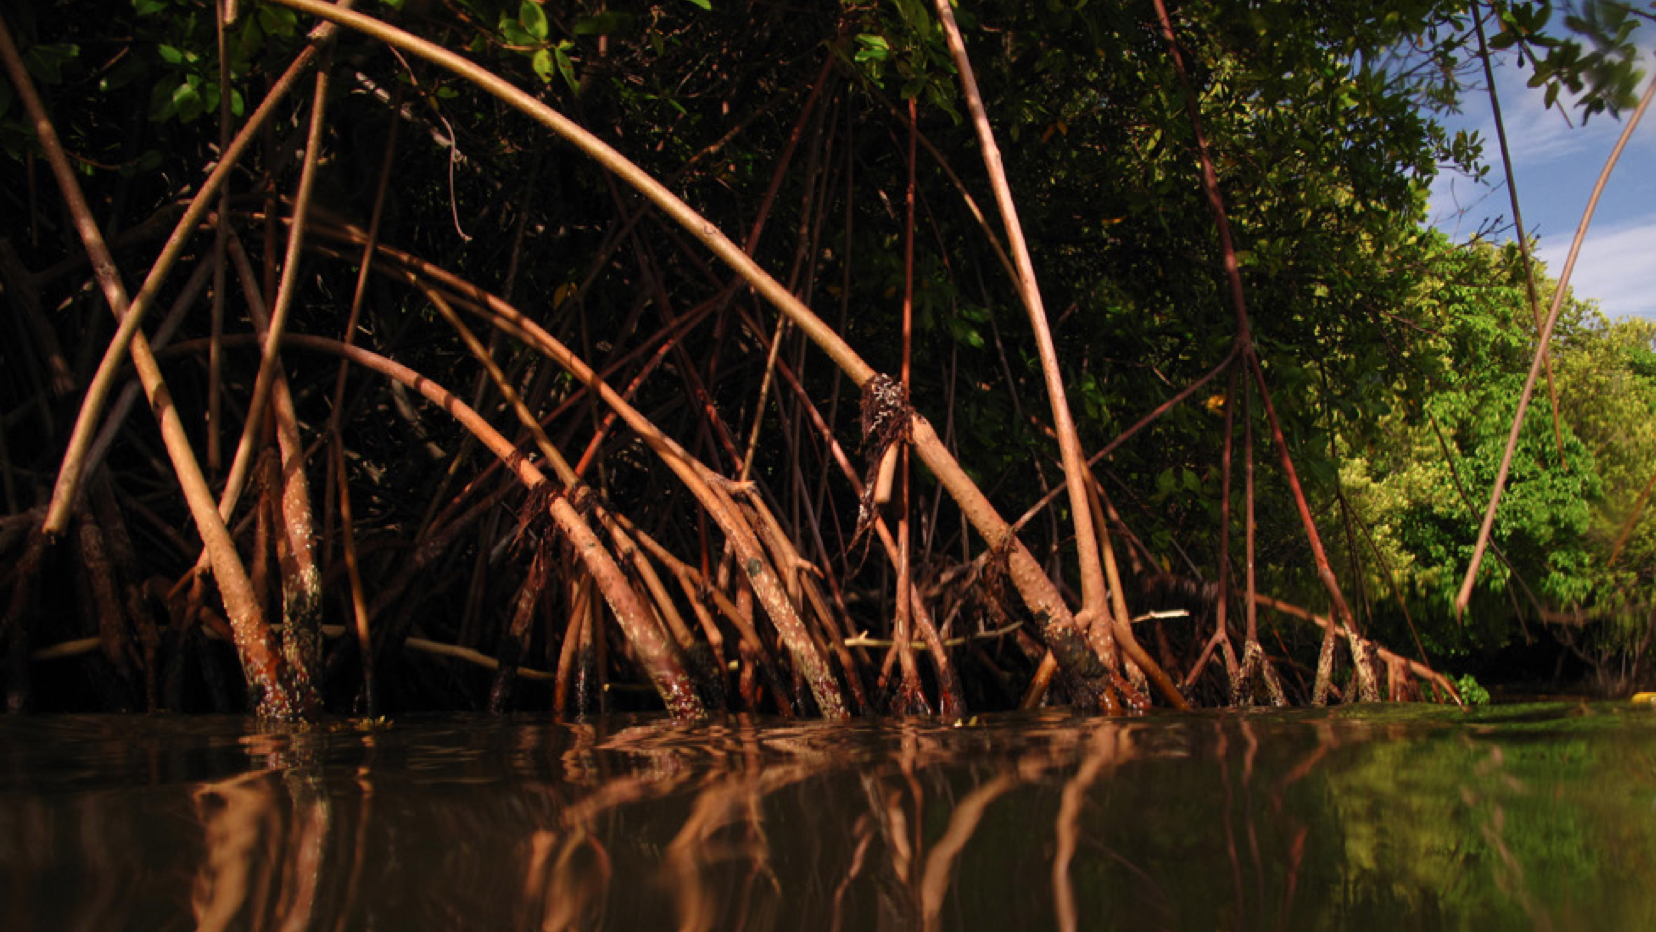     Lancement d’un appel à projets pour la protection et la réhabilitation des mangroves

